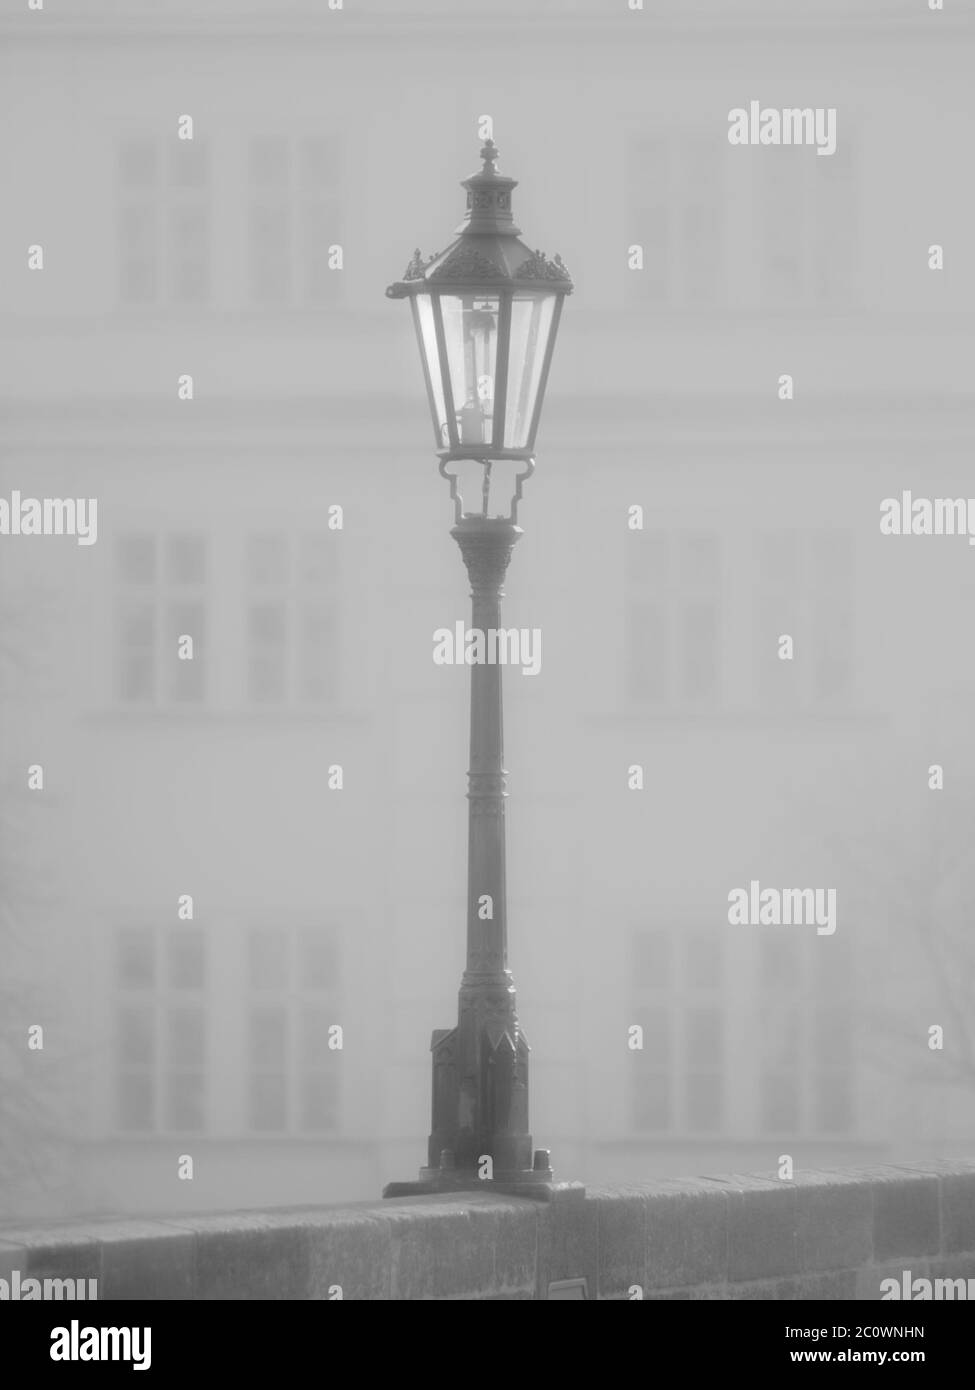 Lampada di strada sul Ponte Carlo in mattinata nebbia, Praga, Repubblica Ceca. Immagine in bianco e nero. Foto Stock